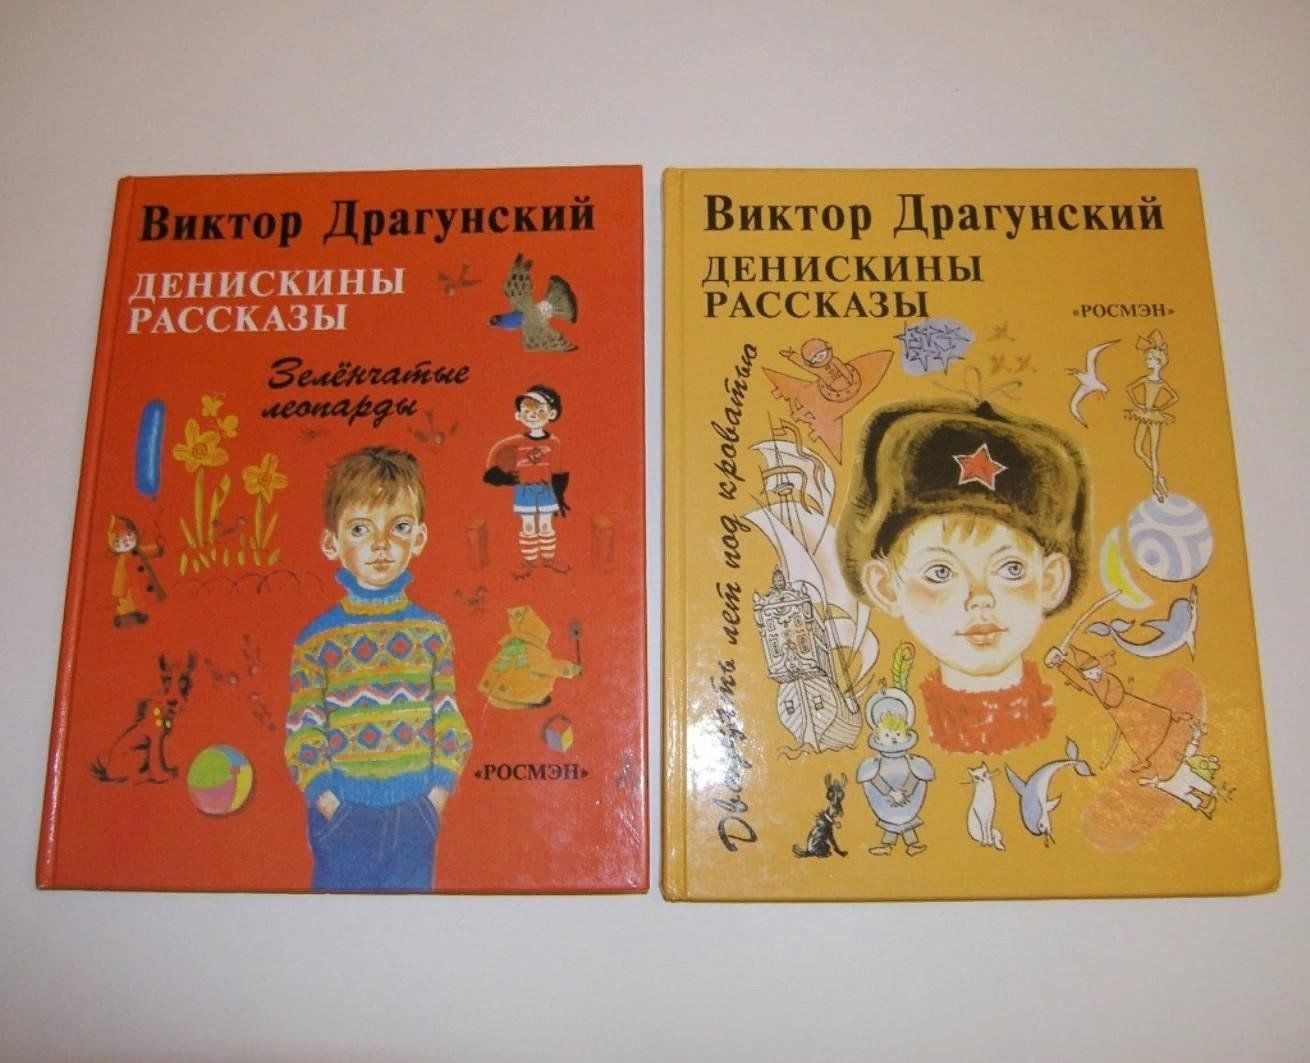 Драгунский книги для детей. Обложки книг Виктора Драгунского.